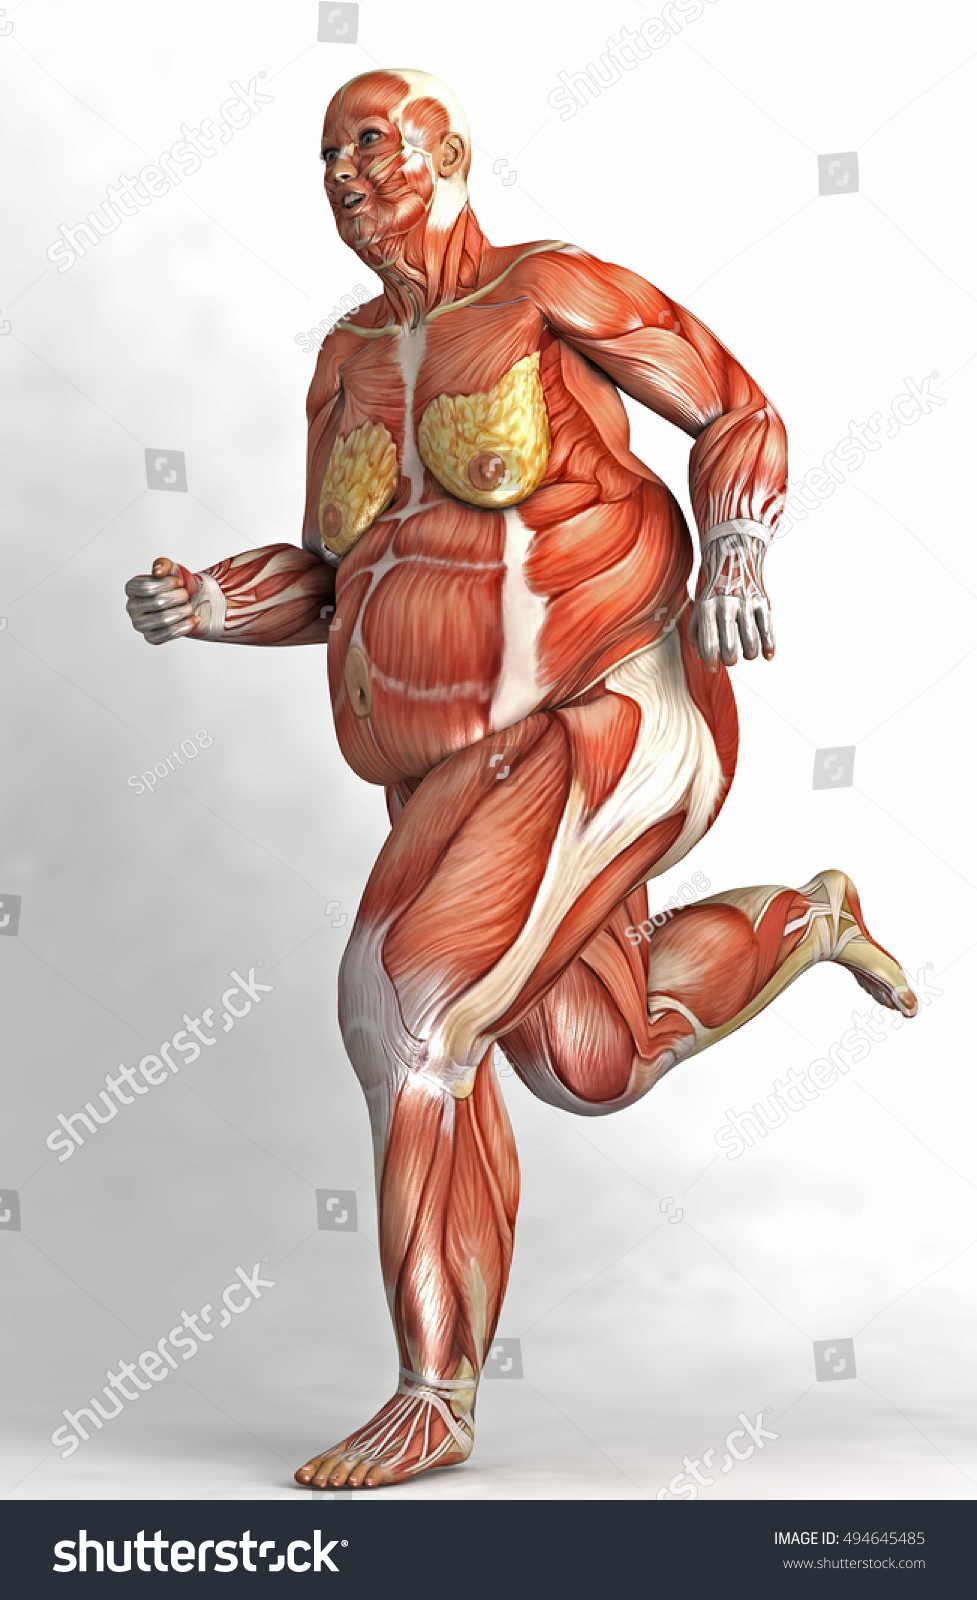 Толстый человек анатомия. Мышцы человека. Скелет человека с мышцами. Тело человека без кожи и мышц. Мышцы женского тела.